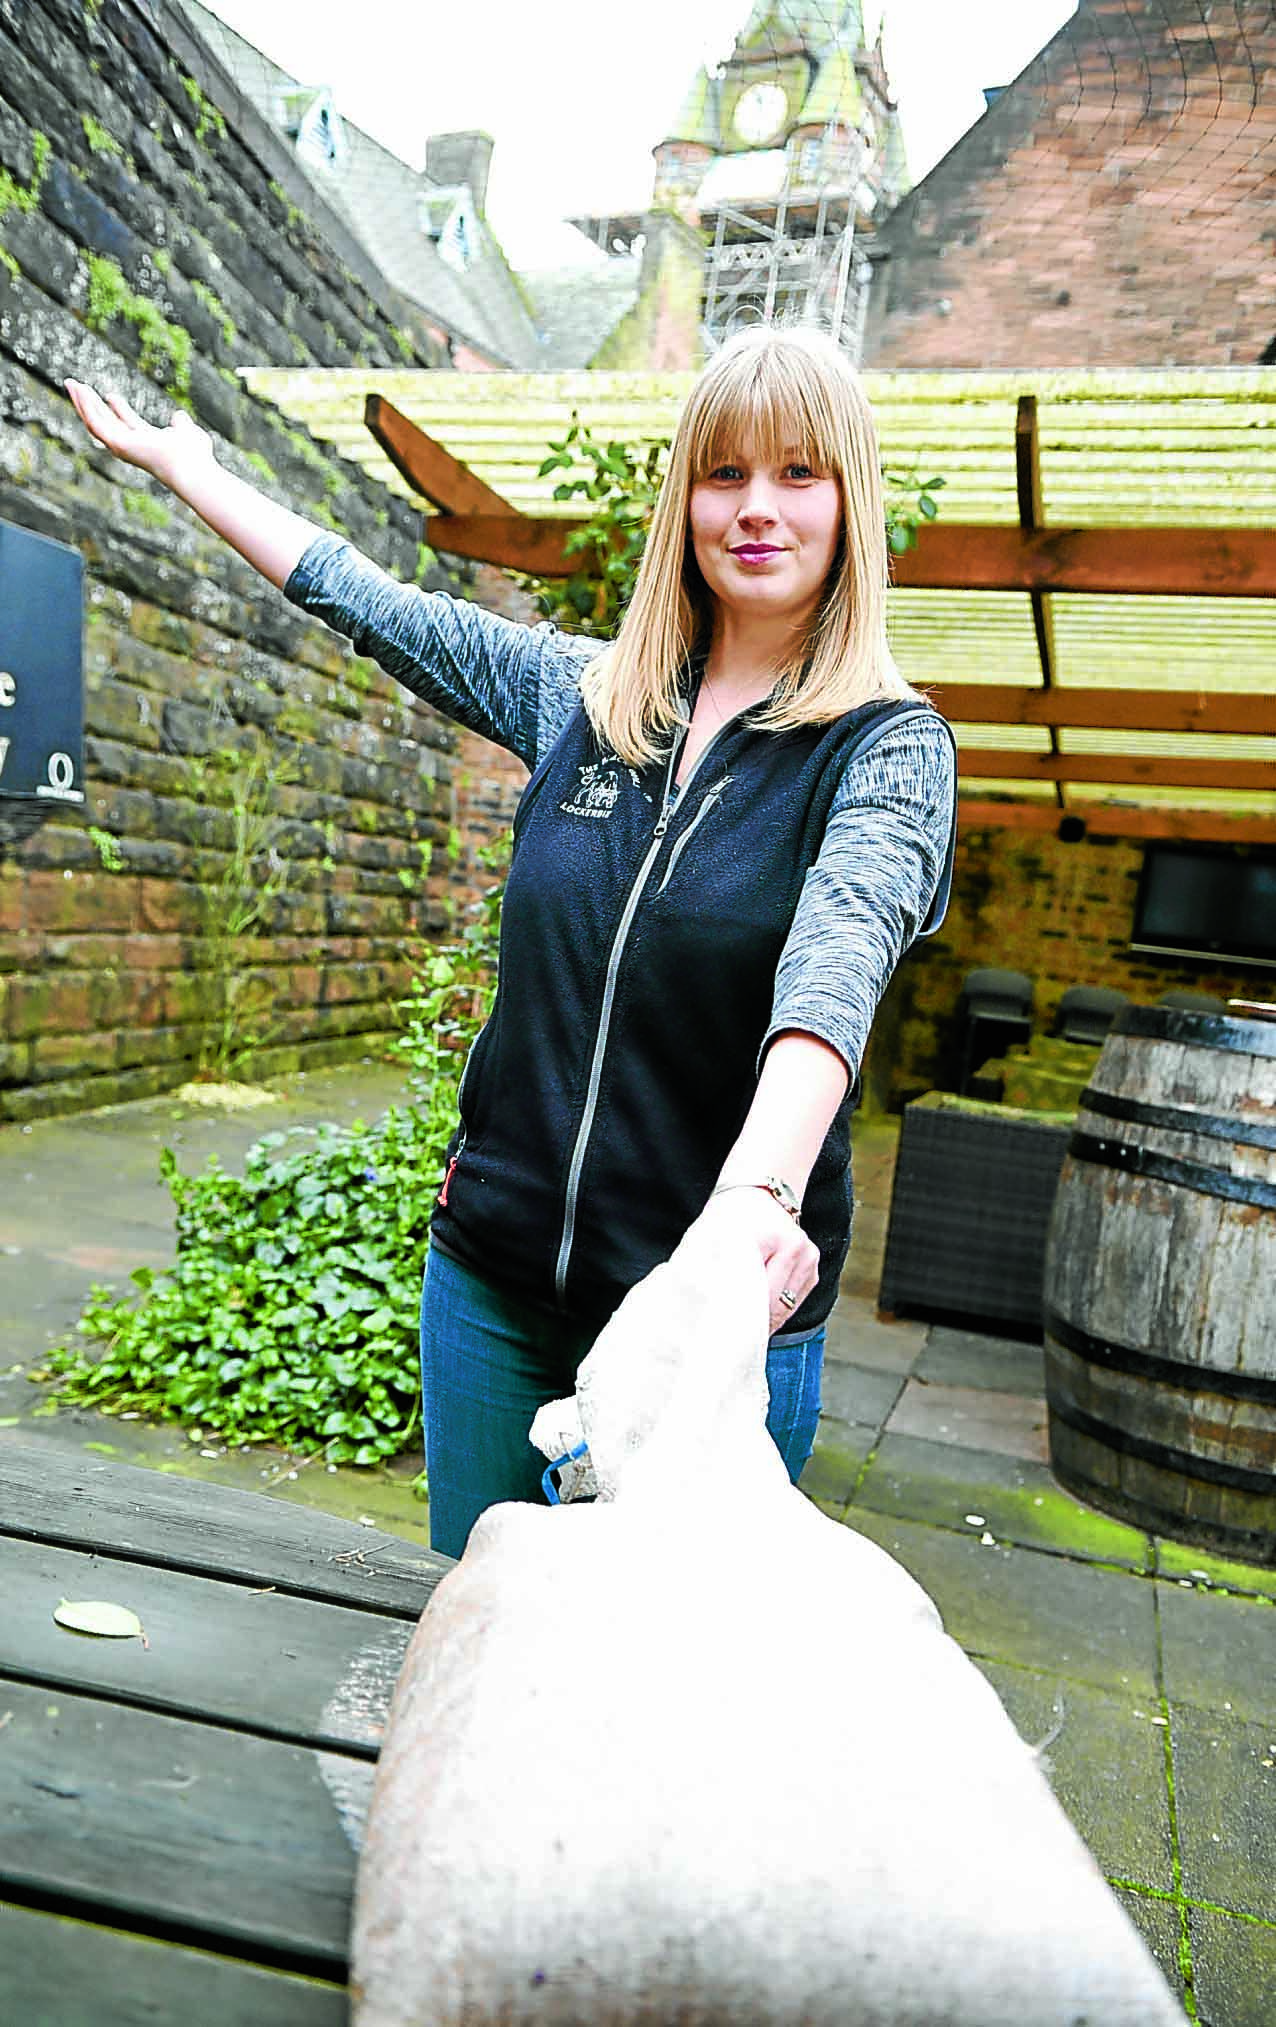 Vandals rubbish beer garden